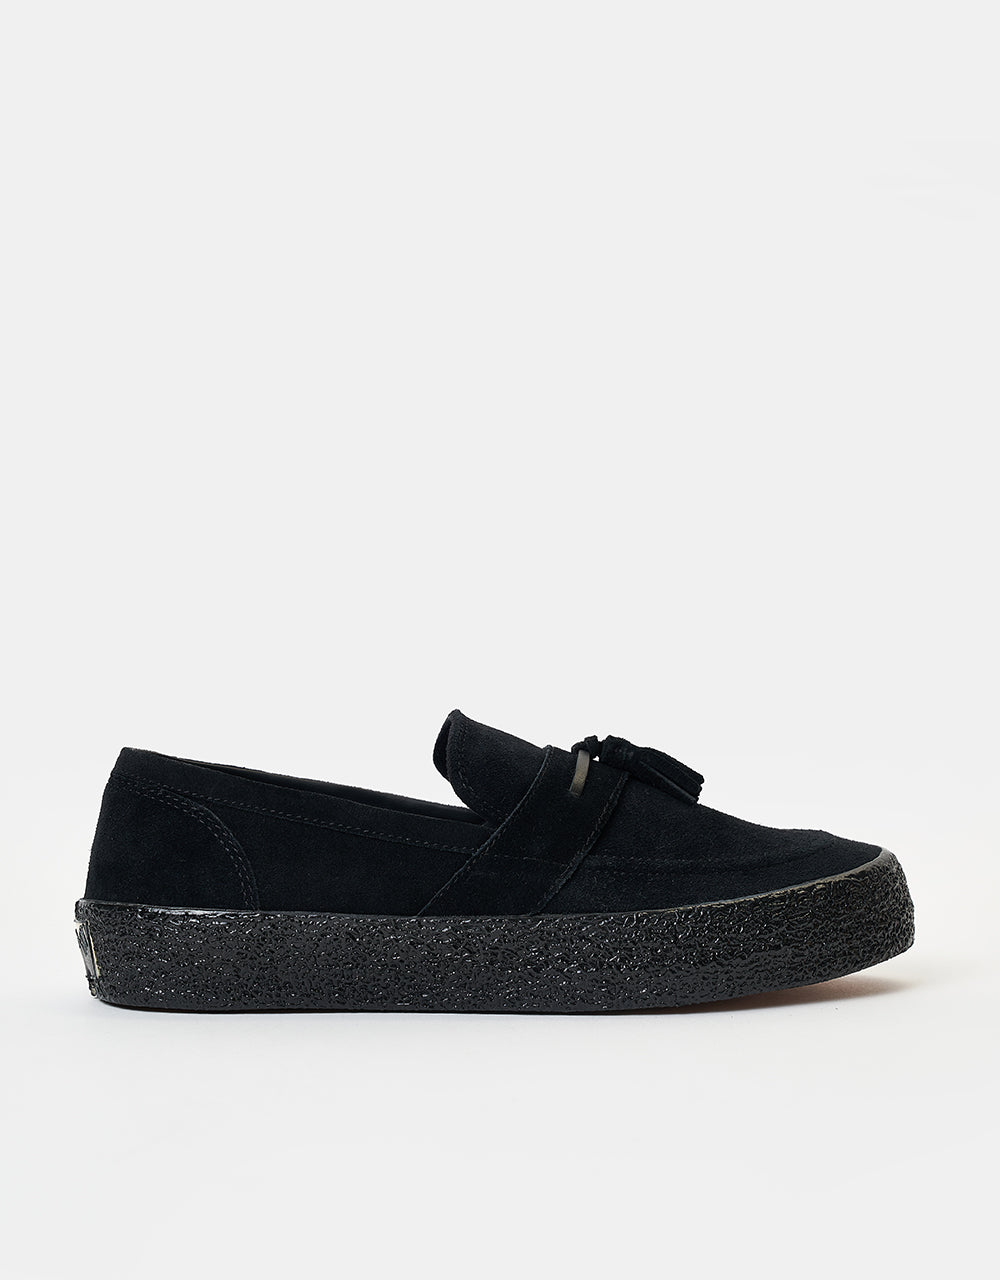 Last Resort AB VM005 Loafer Skate Shoes - Black/Black